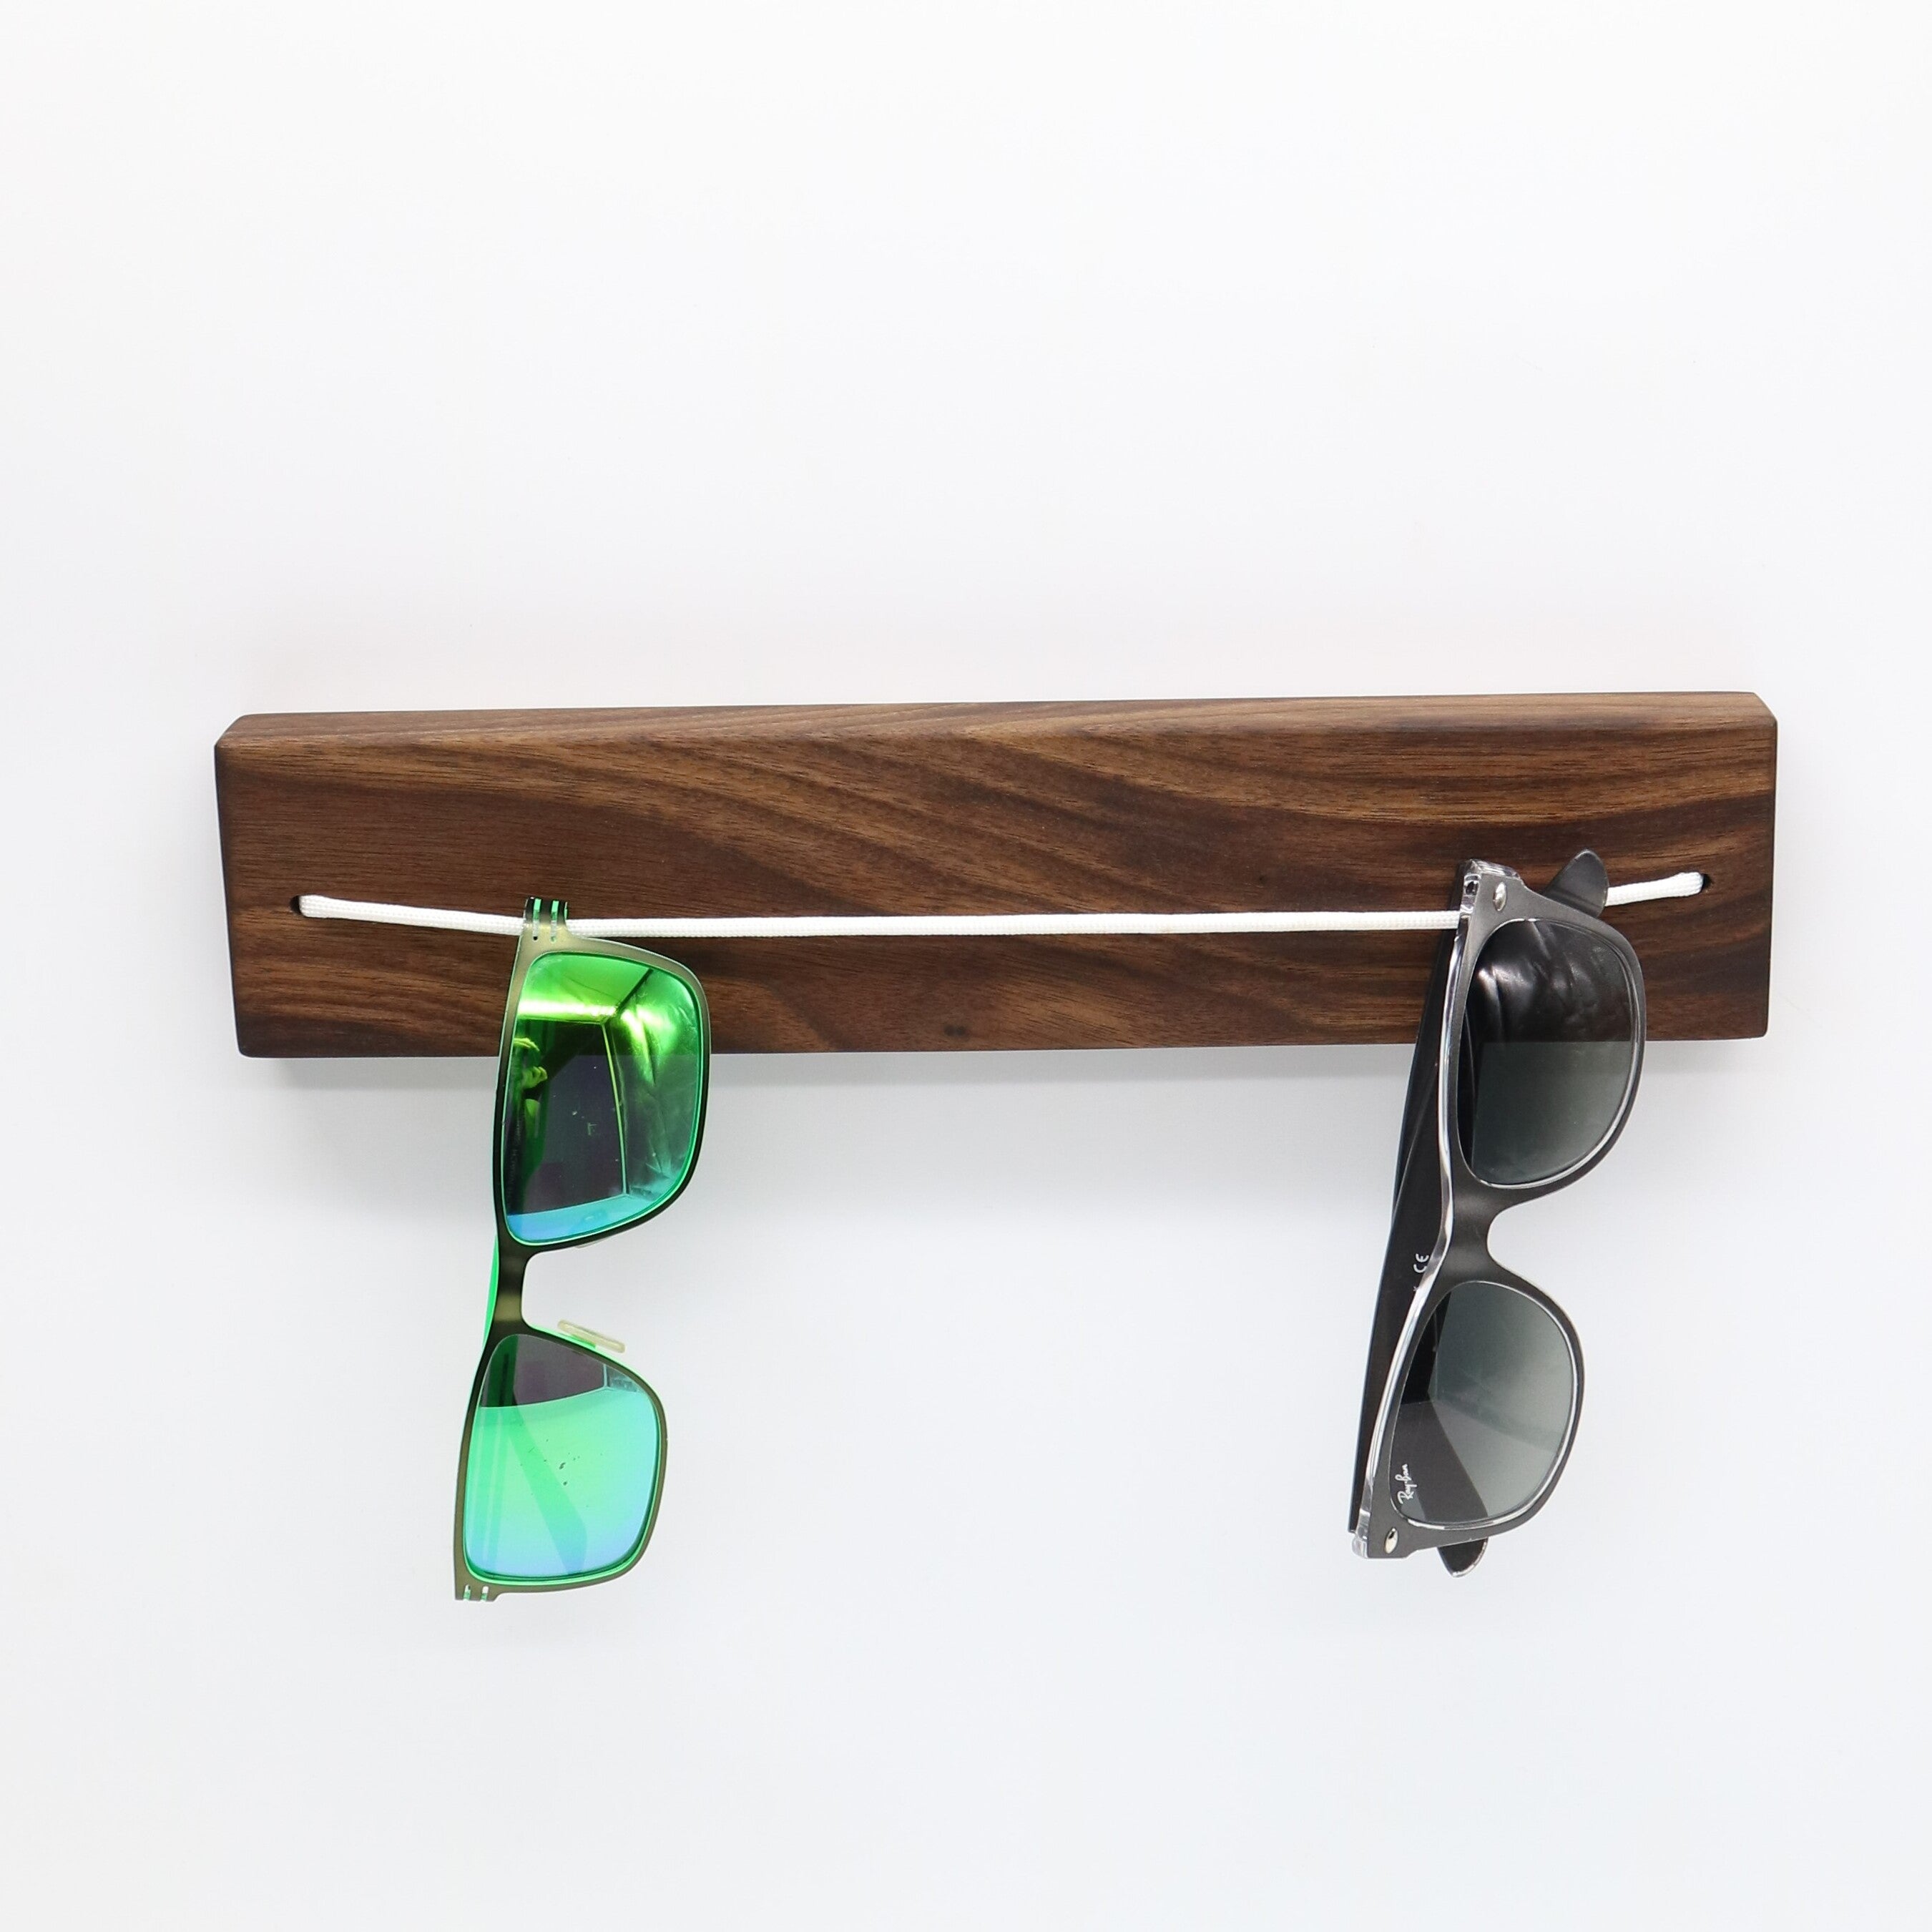 DIY Brillenhalter aus Holz mit dem neuen Dremel 4250